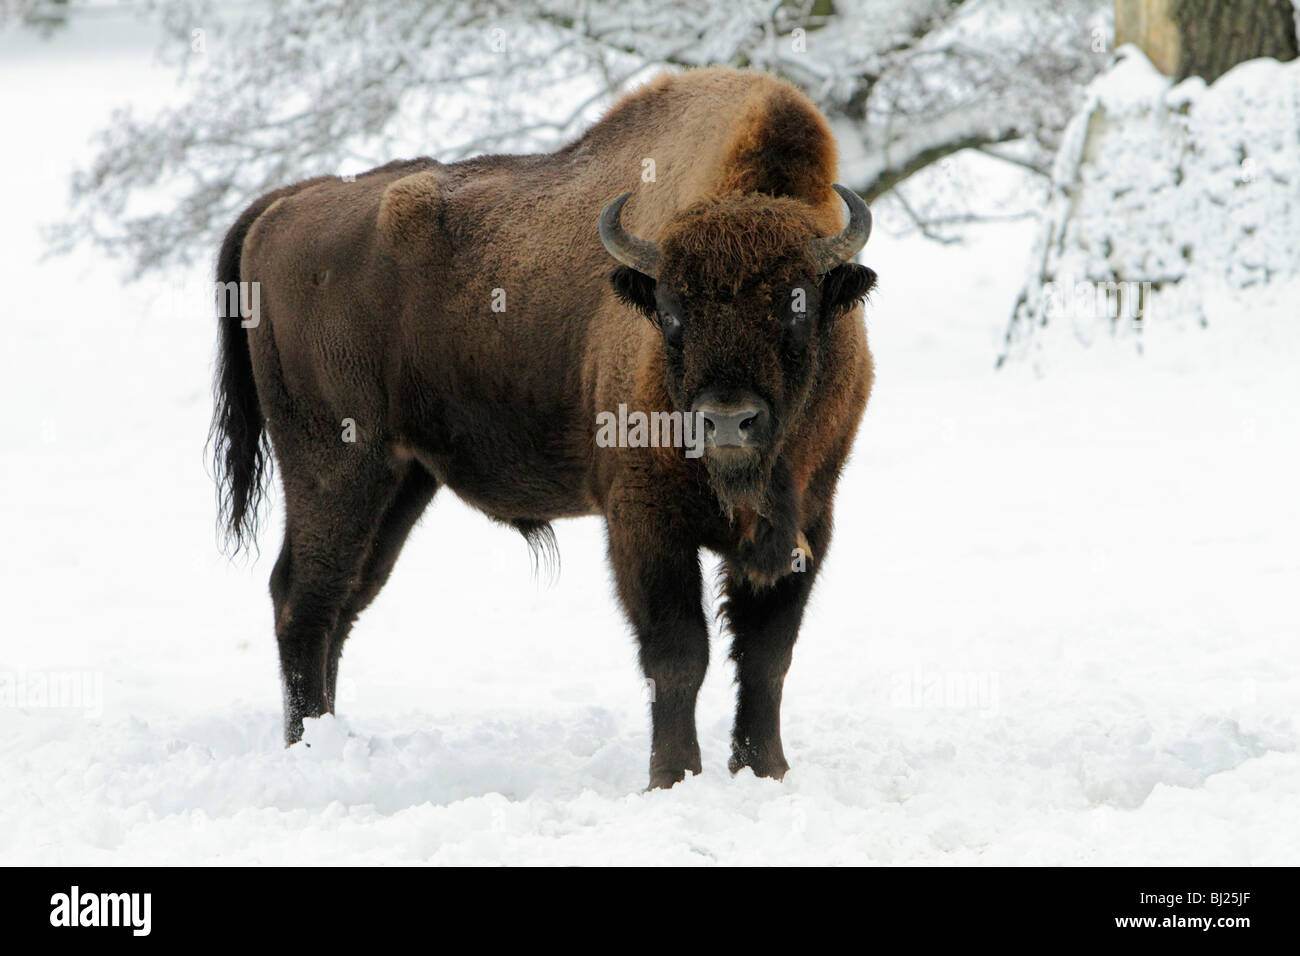 El bisonte europeo, bison bonasus, Bull, en paisaje cubierto de nieve, Alemania Foto de stock